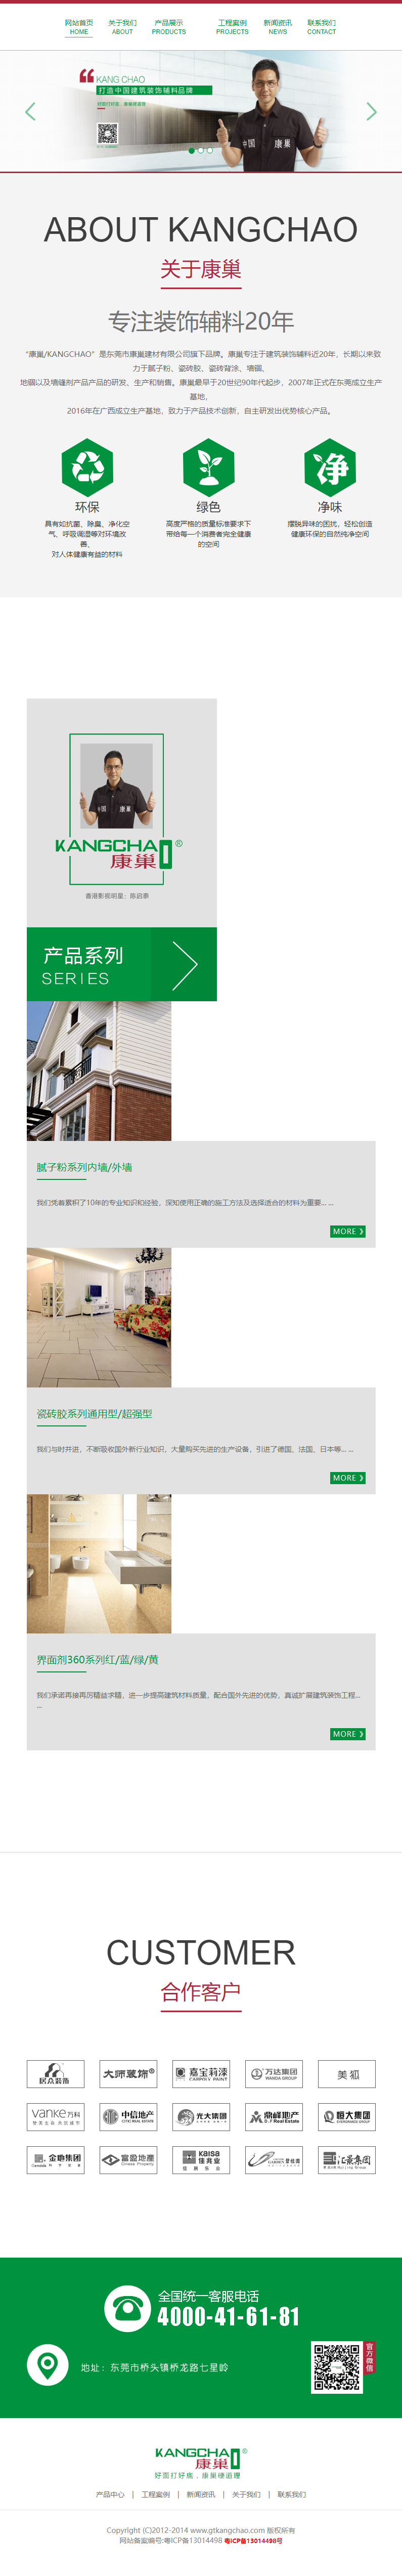 东莞市高特建筑装饰材料有限公司网站案例